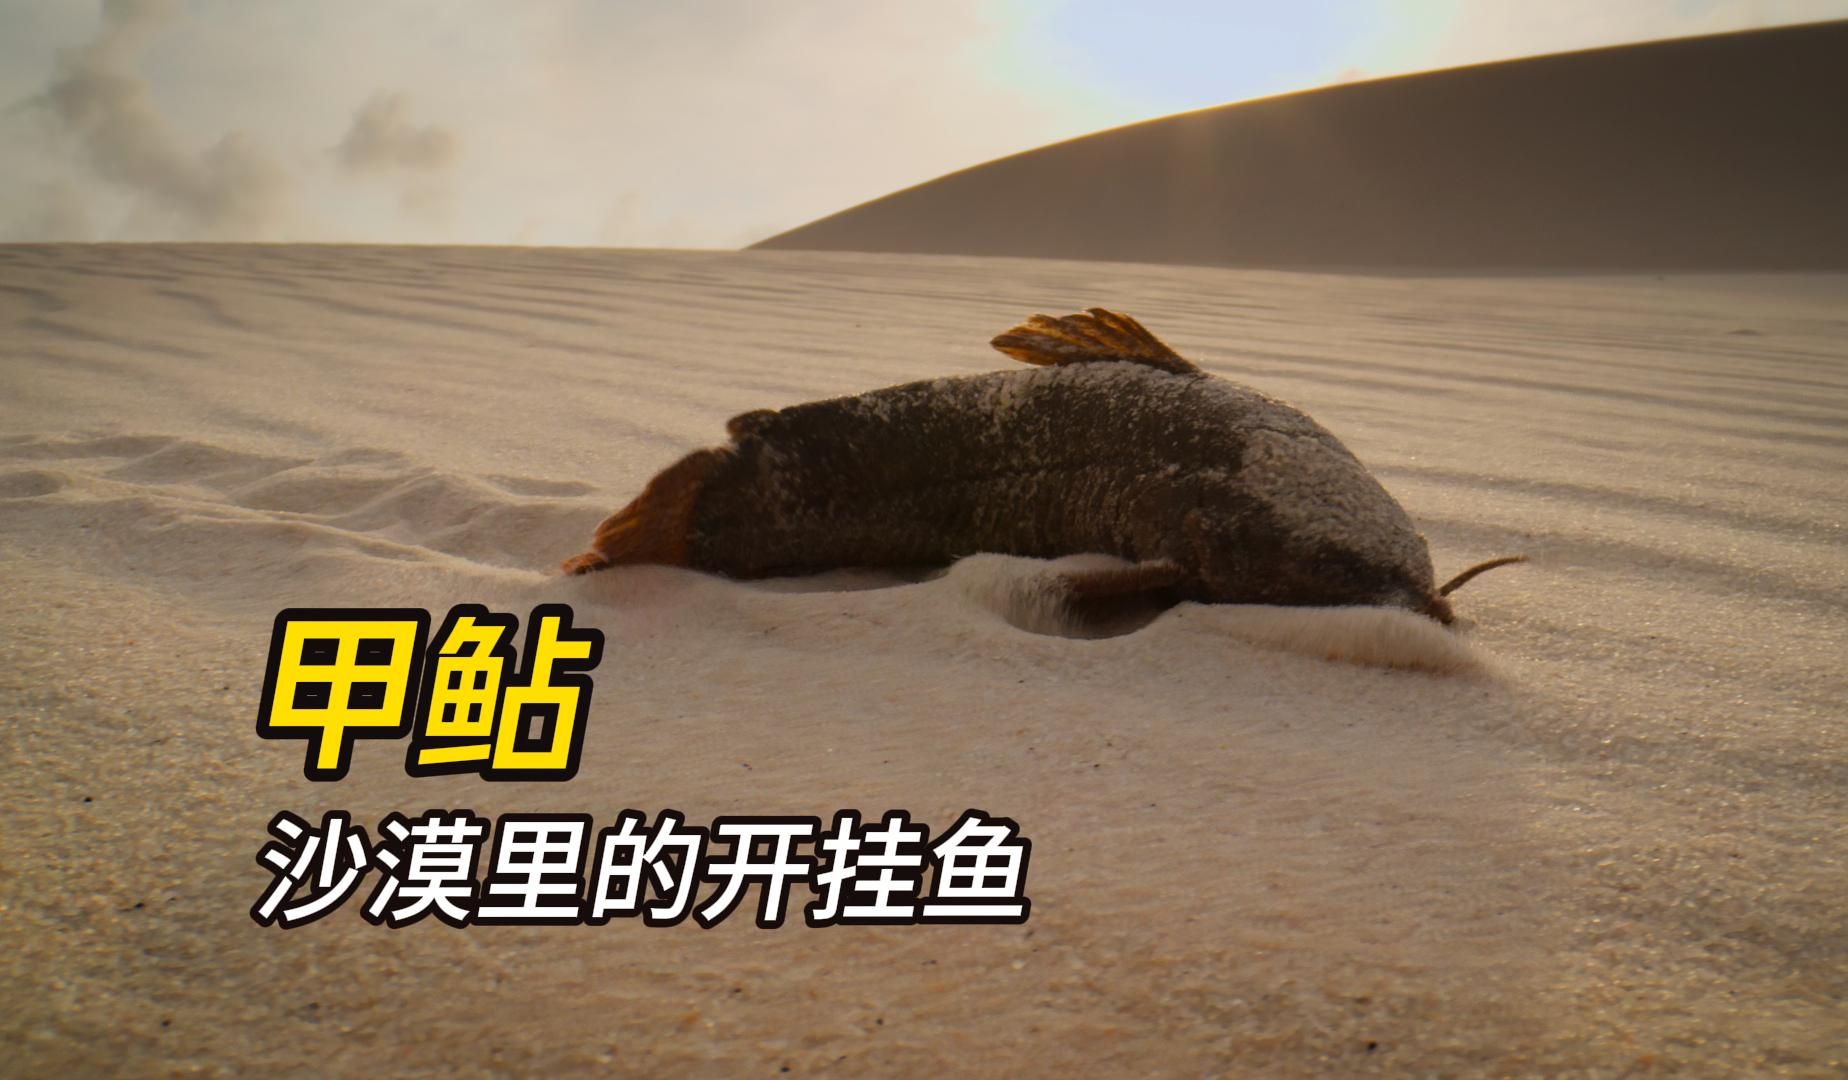 炎热干旱的沙漠里 出现了两个颠覆认知的物种 一个鱼 一个乌龟